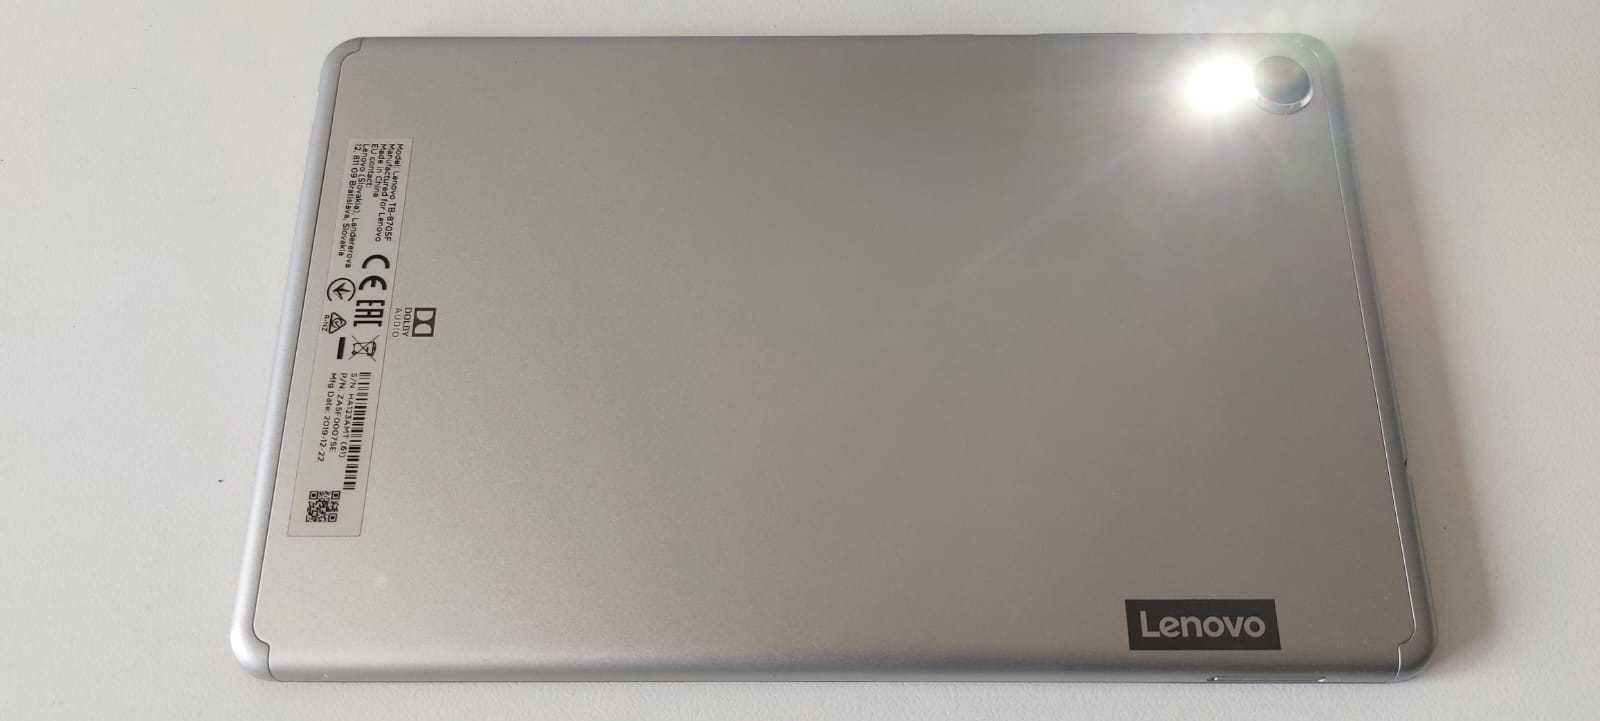 Lenovo Tab M8 (TB-8705F) versão 8" full HD e flash